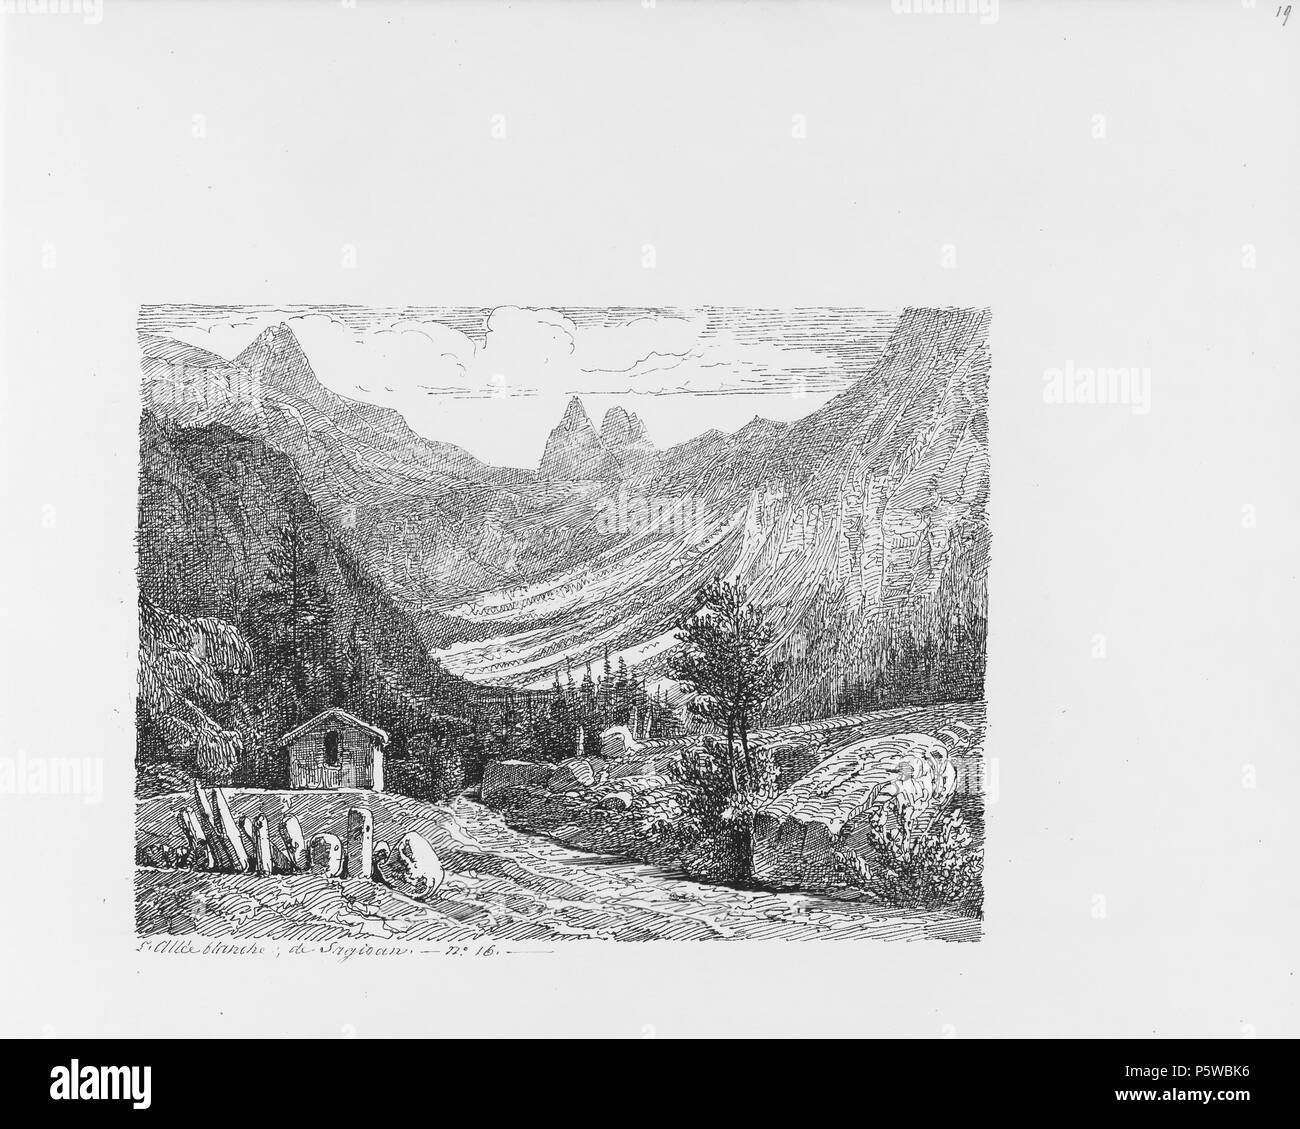 322 CH-NB-Voyage autour du Mont-Blanc dans les vallées d'Hérens de Zermatt et au Grimsel 1843-nbdig-19161-018 Stock Photo